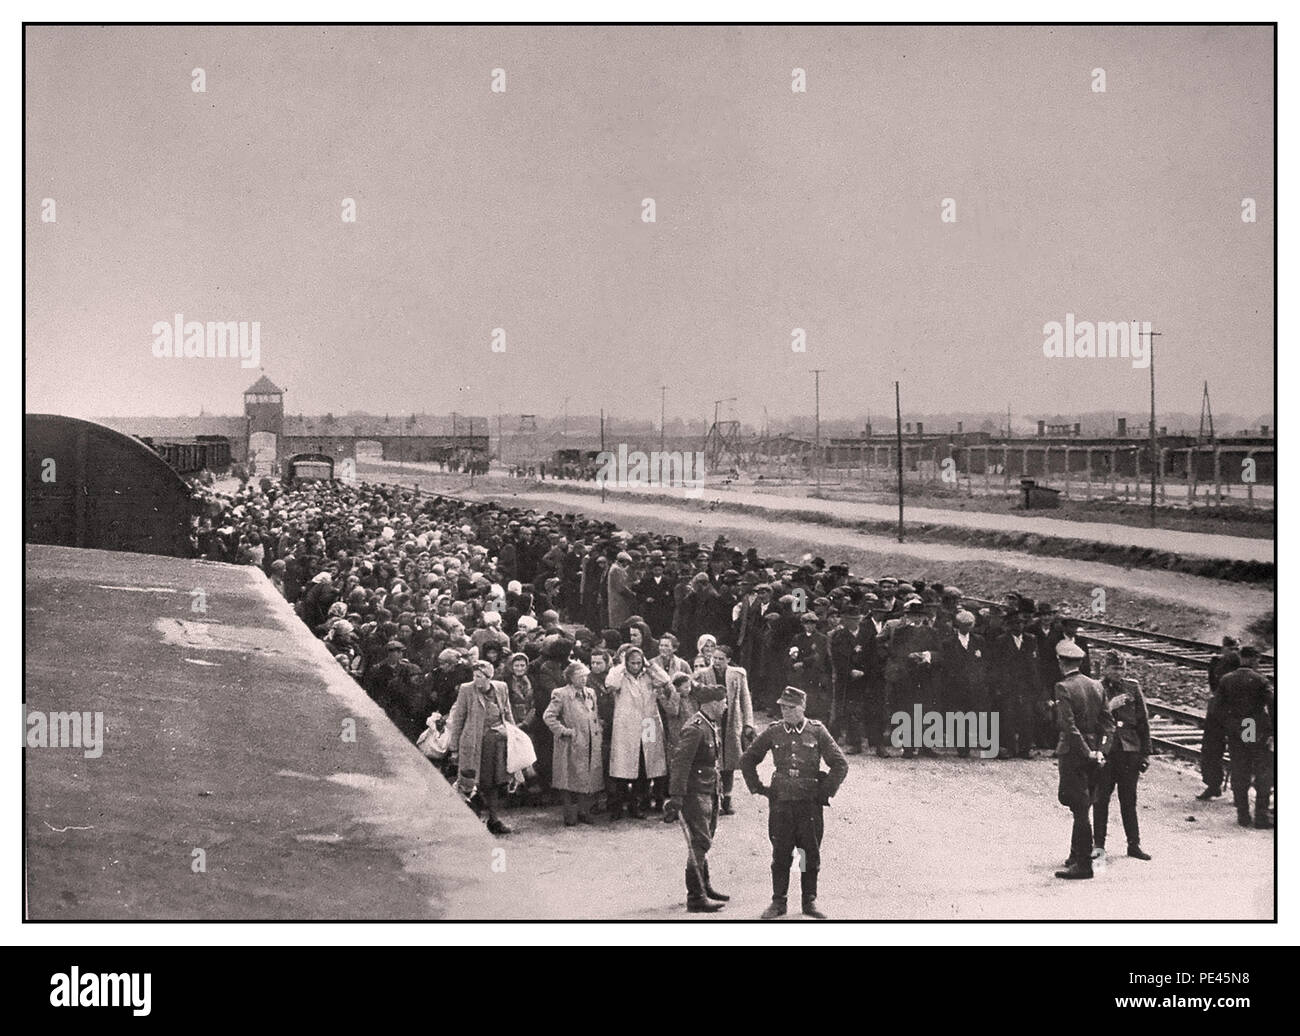 ARRIVO DEI PRIGIONIERI DELL'OLOCAUSTO AD AUSCHWITZ-BIRKENAU - Una visione dell'inferno sulla terra. 1944. Le truppe naziste in uniforme militare indossano scarponi da scialuppa di grado (vita o morte) ignari prigionieri di sesso maschile e femminile sul convitto ferroviario all'esterno dell'ingresso del campo di sterminio di Auschwitz-Birkenau. Il famigerato campo di Auschwitz fu iniziato per ordine di Adolf Hitler nel 1940 durante l'occupazione della Polonia da parte della Germania nazista durante la guerra mondiale del 2. Fu entusiasticamente abilitato da Heinrich Luitpold Himmler, il Reichsführer dello Schutzstaff, e membro principale del Partito nazista della Germania. Foto Stock